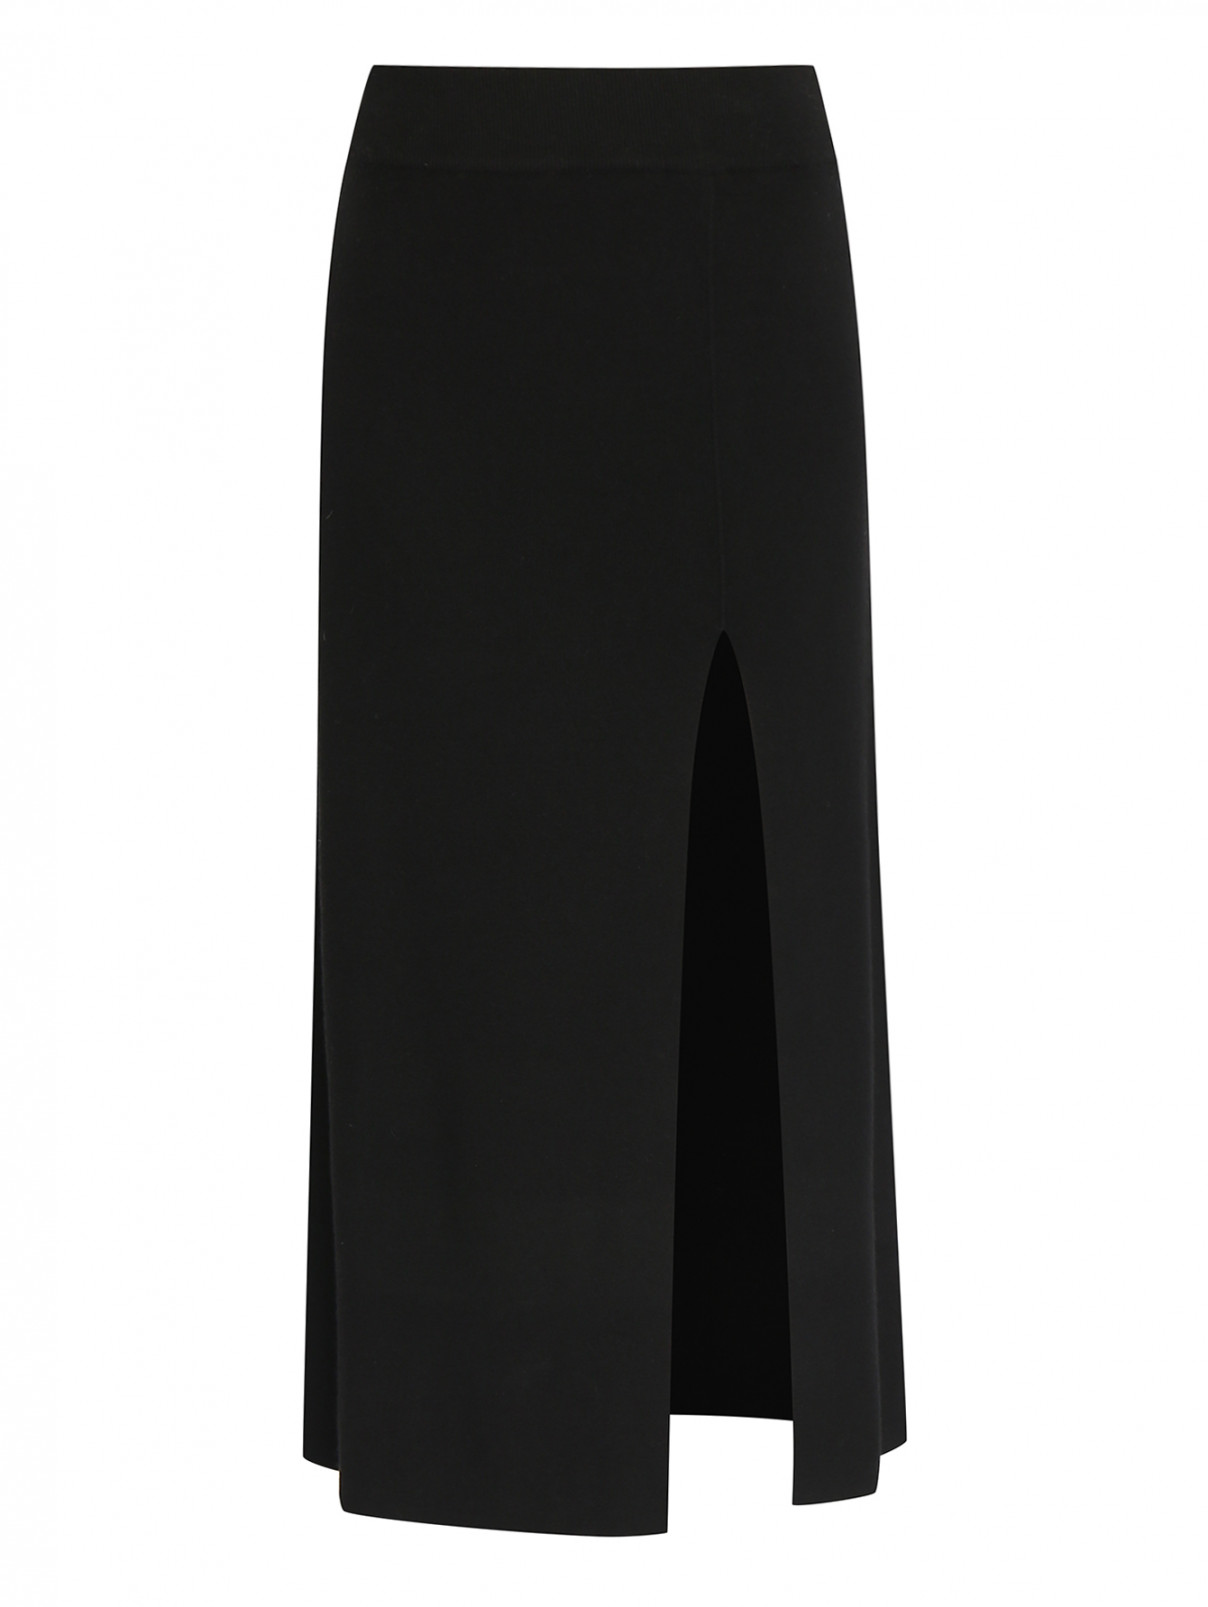 Трикотажная юбка-миди с разрезом Shade  –  Общий вид  – Цвет:  Черный